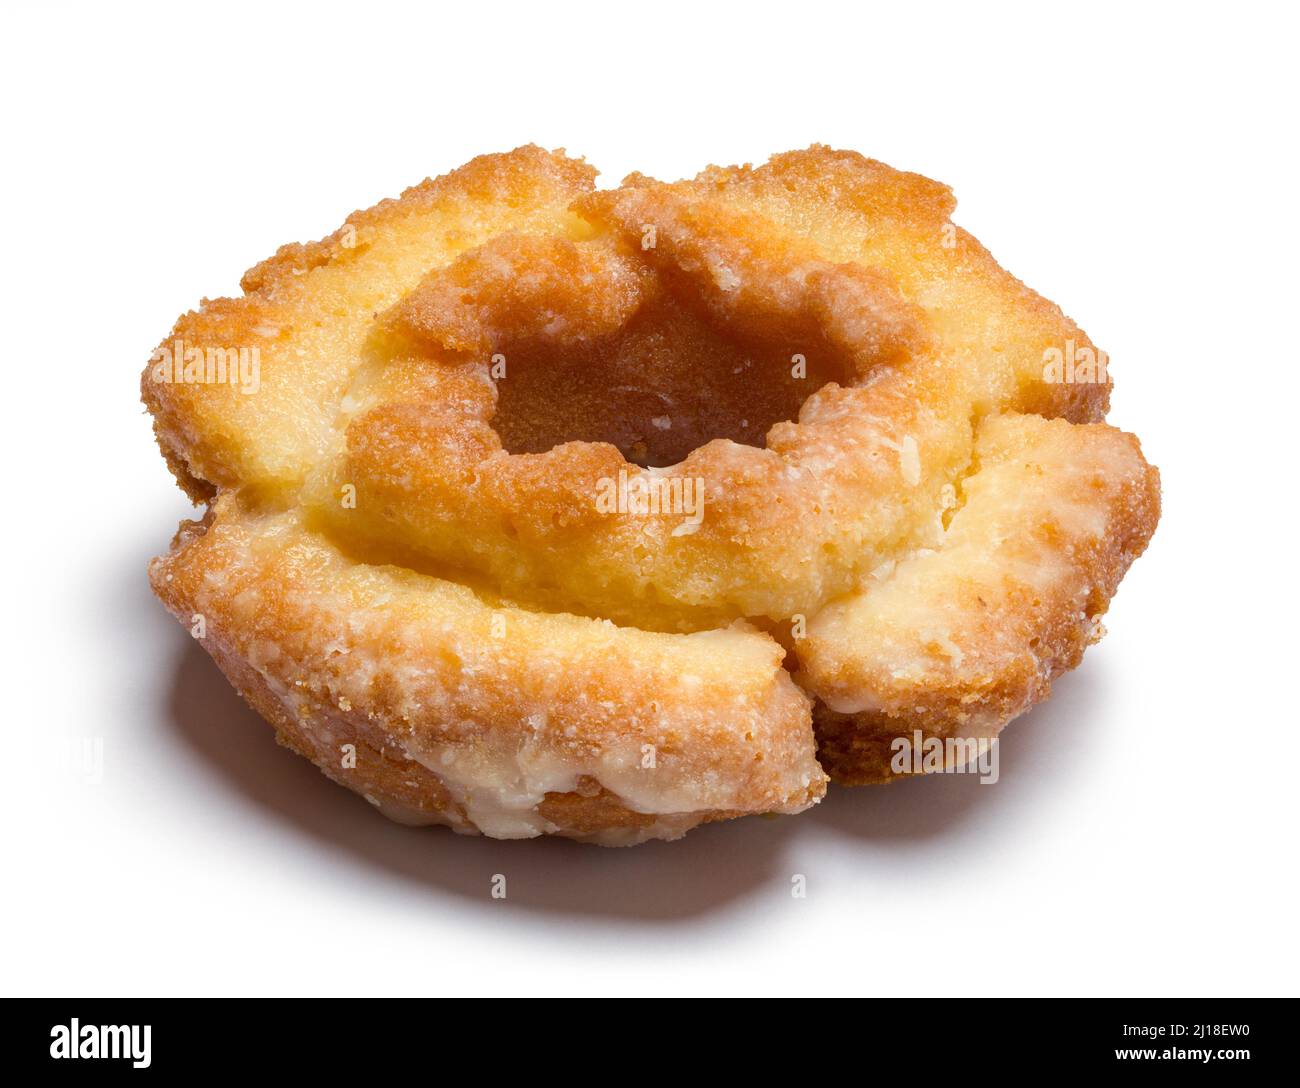 Old Fashion Cake Donut Auf Weiß Geschnitten. Stockfoto